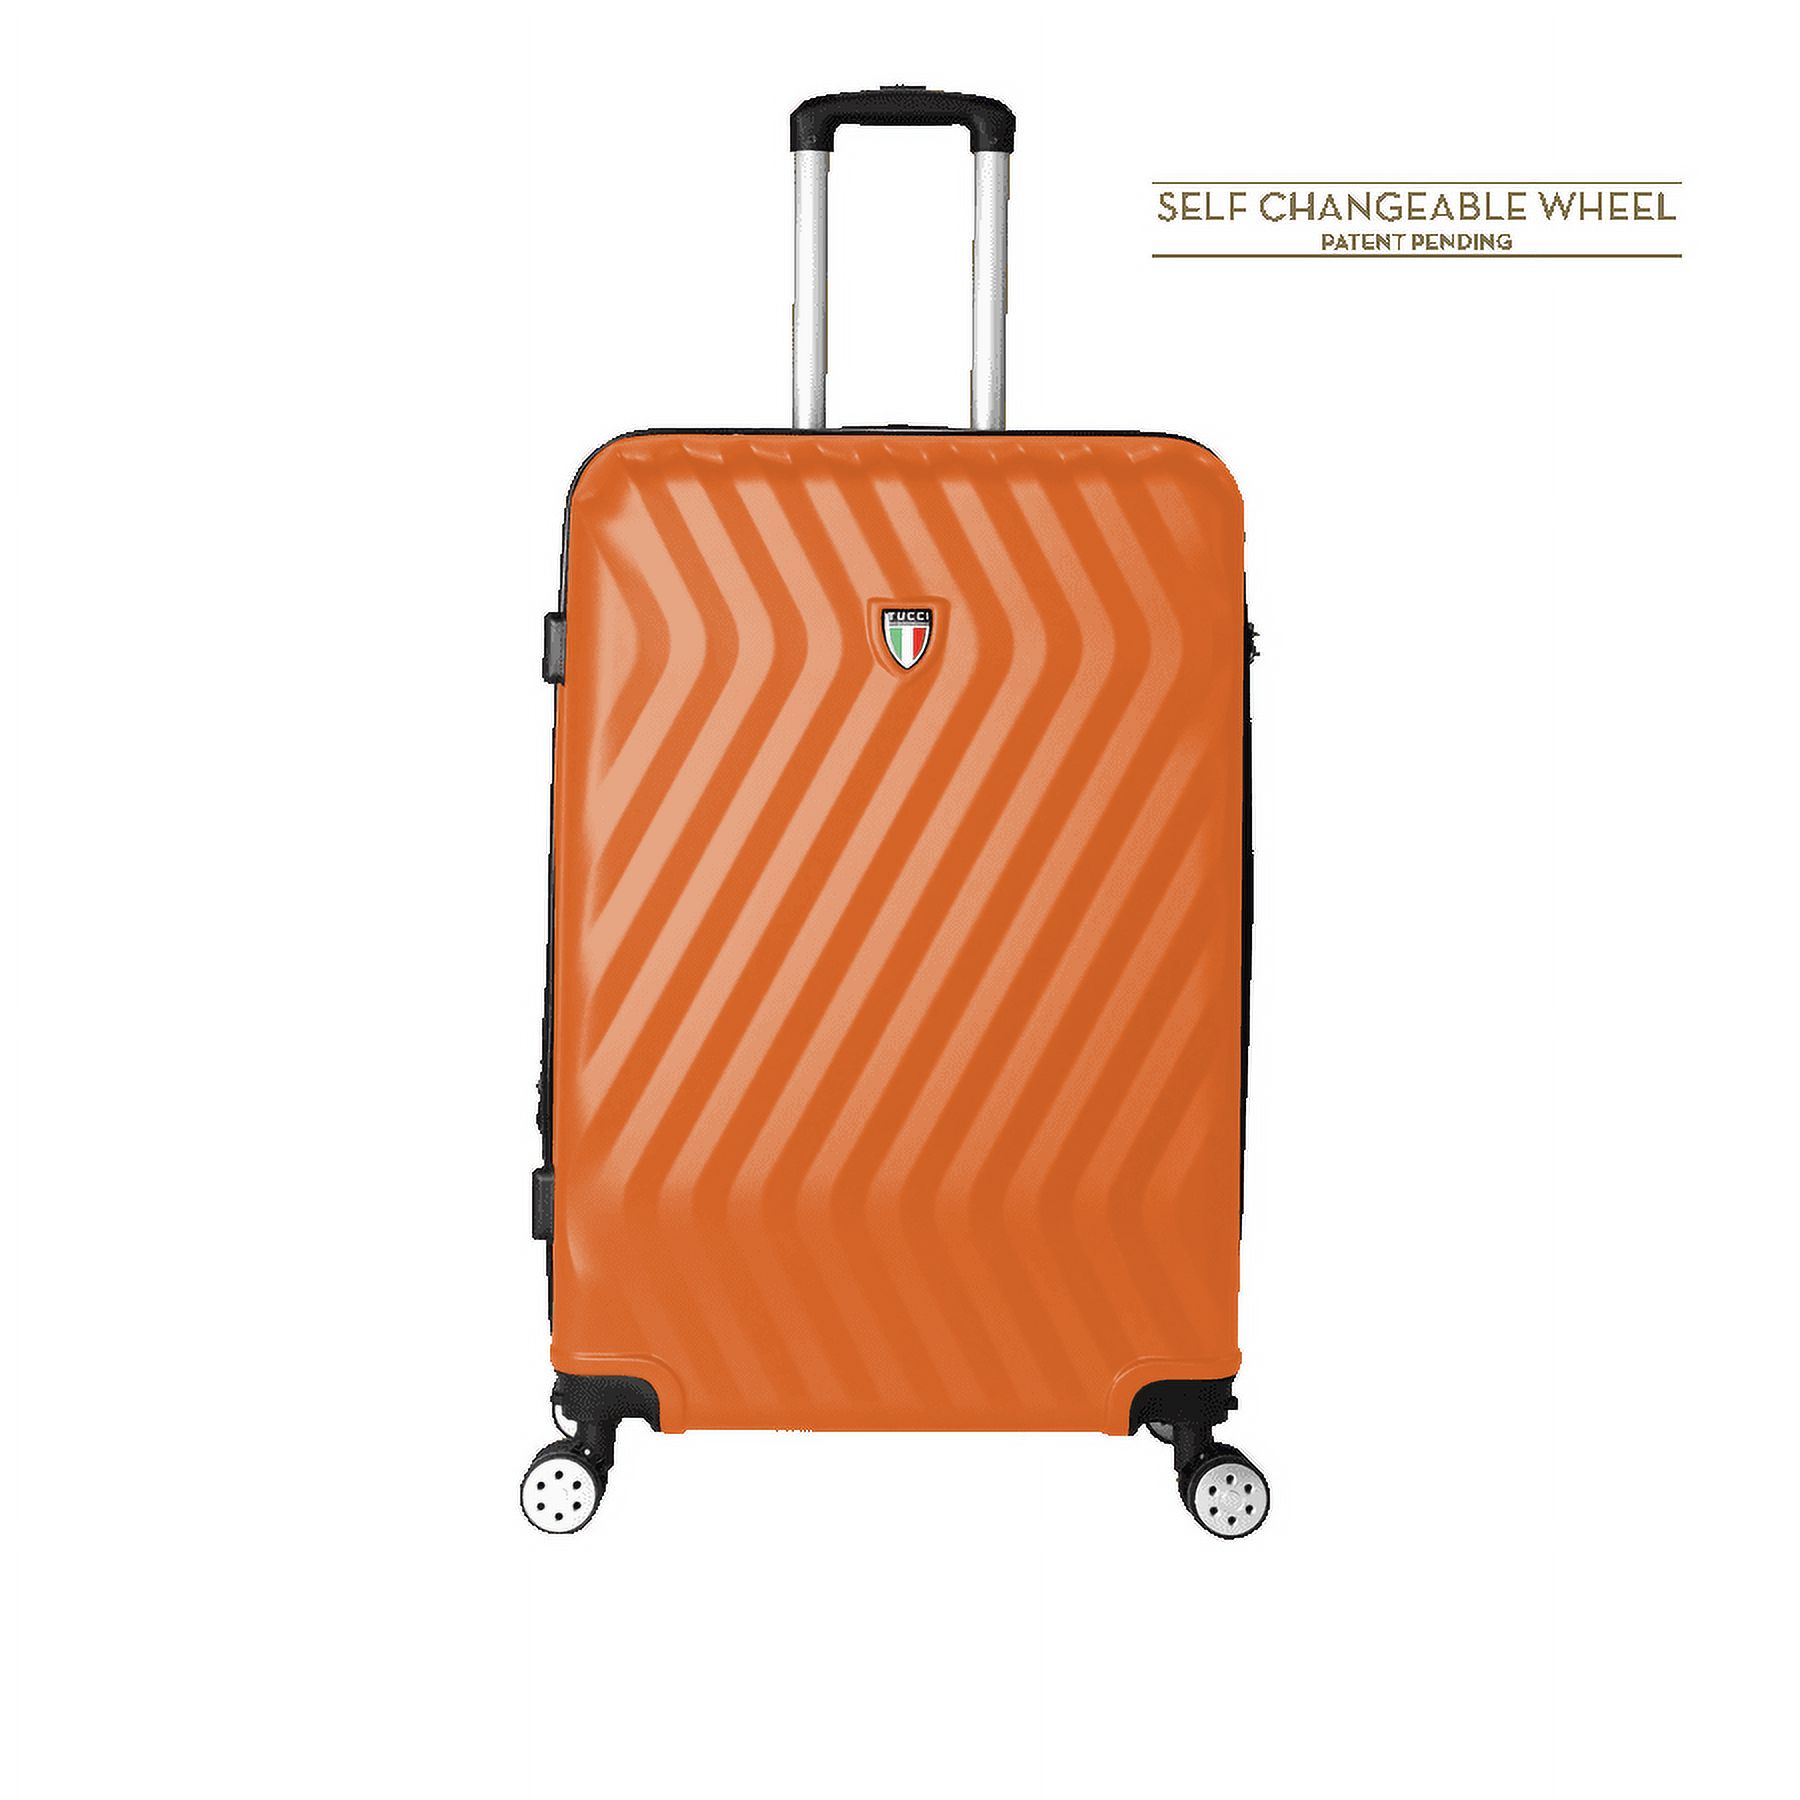 MUTEVOLE 32" Spinner Wheeled Luggage Bag Travel Suitcase - image 1 of 4